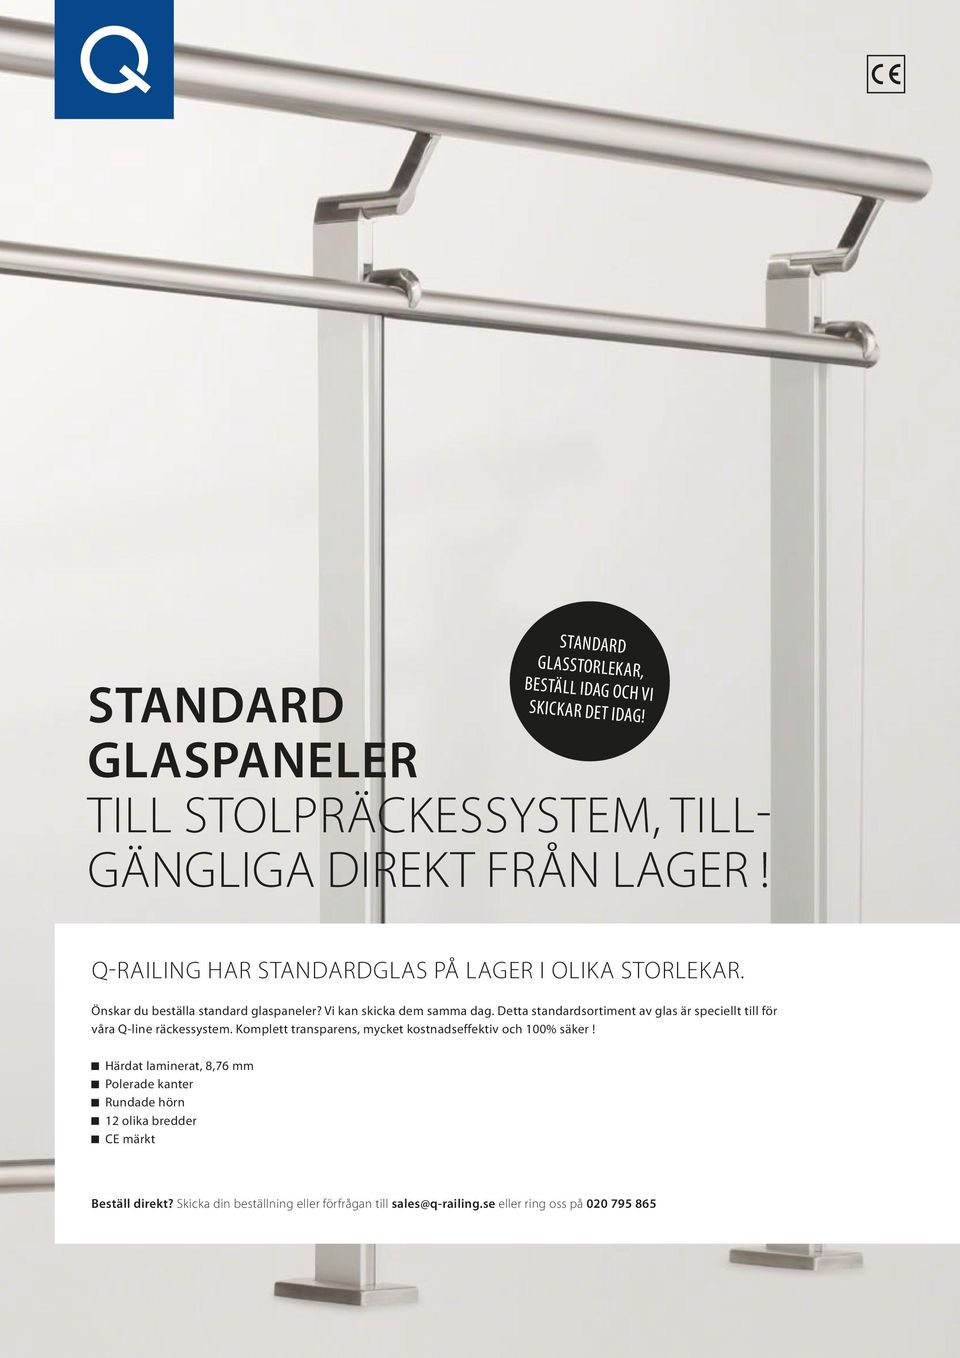 Detta standardsortiment av glas är speciellt till för våra Q-line räckessystem. Komplett transparens, mycket kostnadseffektiv och 100% säker!